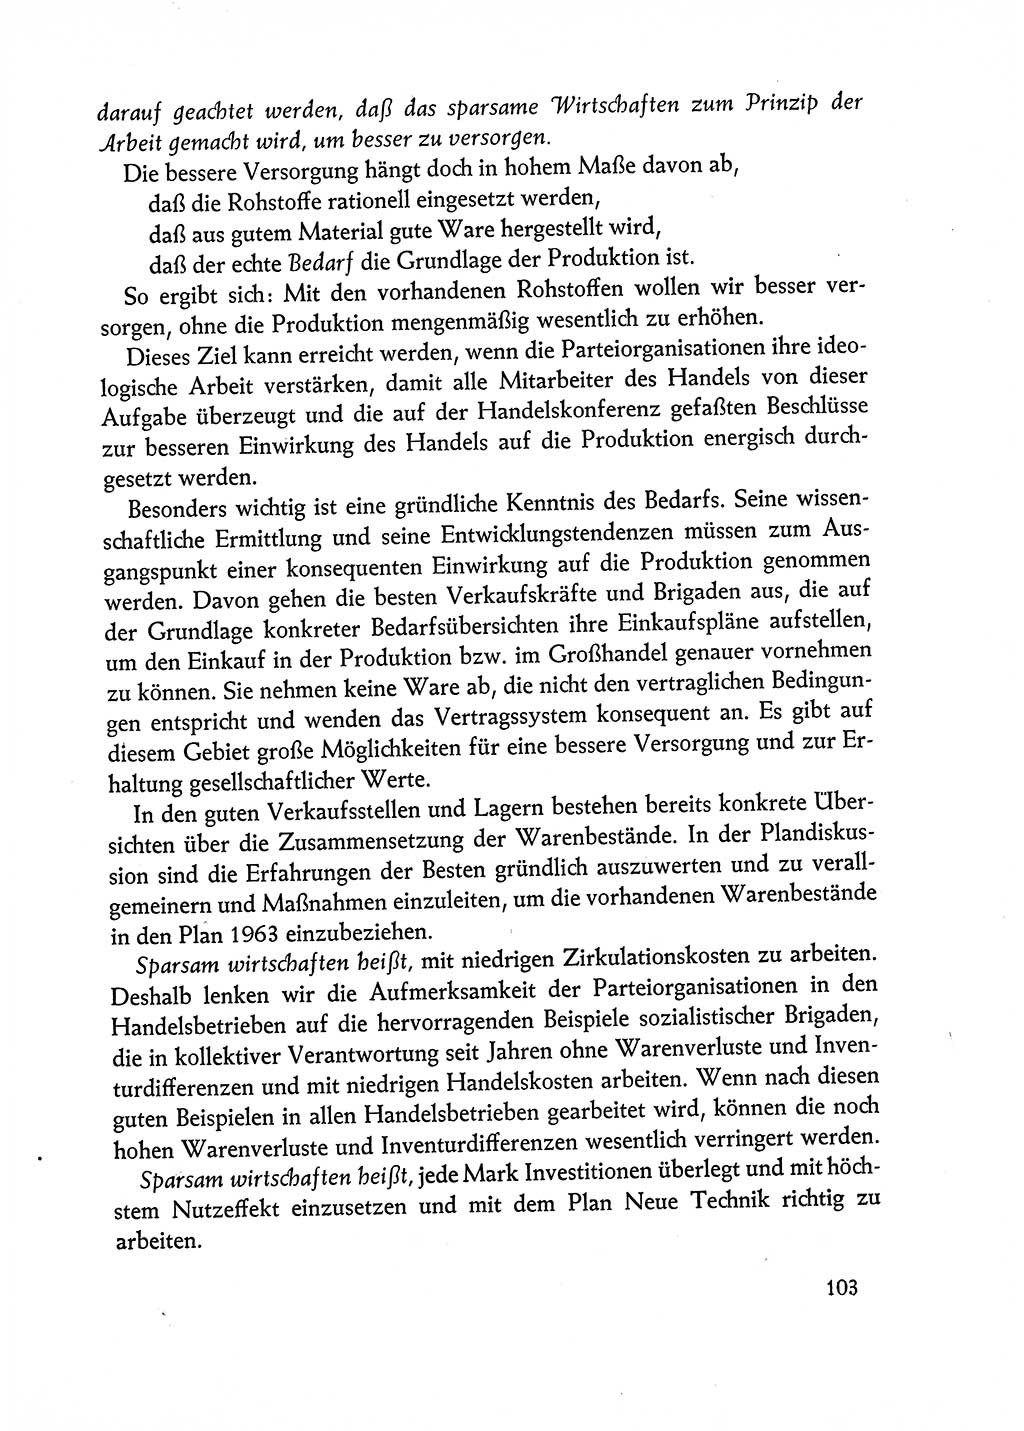 Dokumente der Sozialistischen Einheitspartei Deutschlands (SED) [Deutsche Demokratische Republik (DDR)] 1962-1963, Seite 103 (Dok. SED DDR 1962-1963, S. 103)